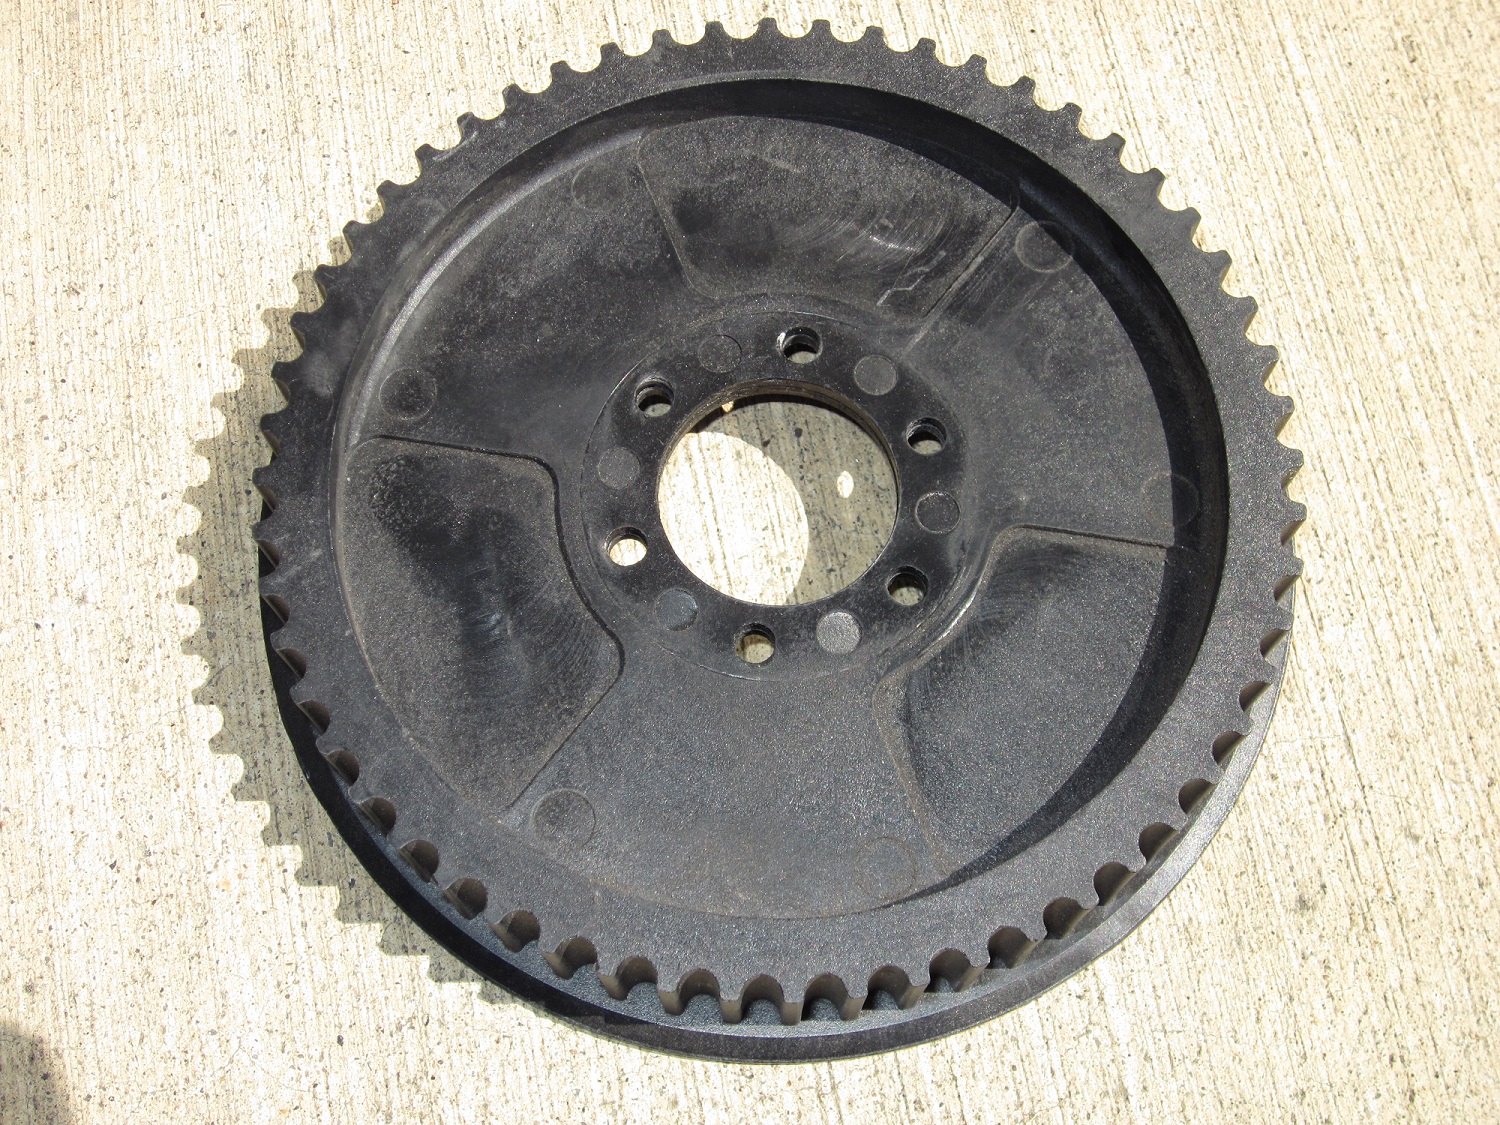 Wheel, Rear, 48 Spoke